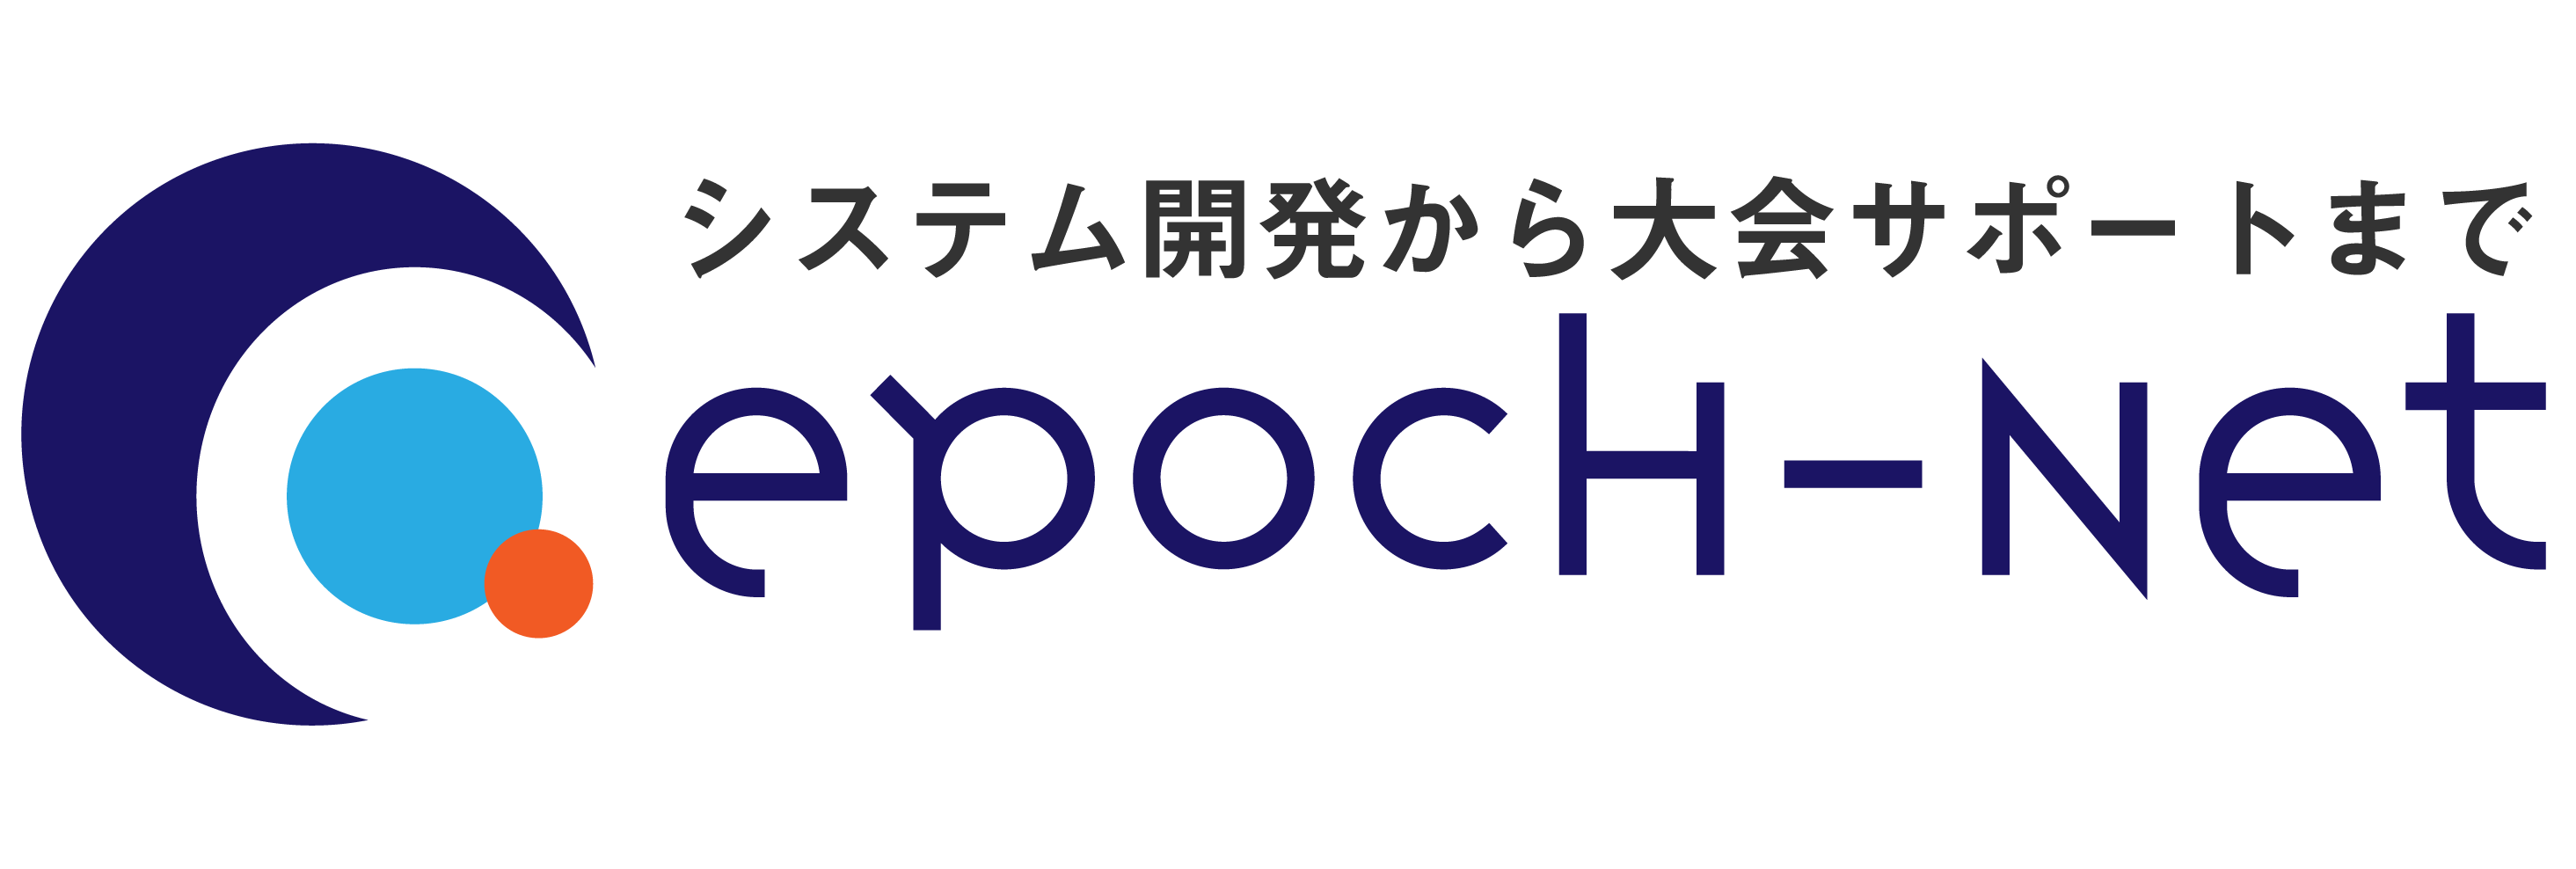 EPOCH-NETロゴマーク